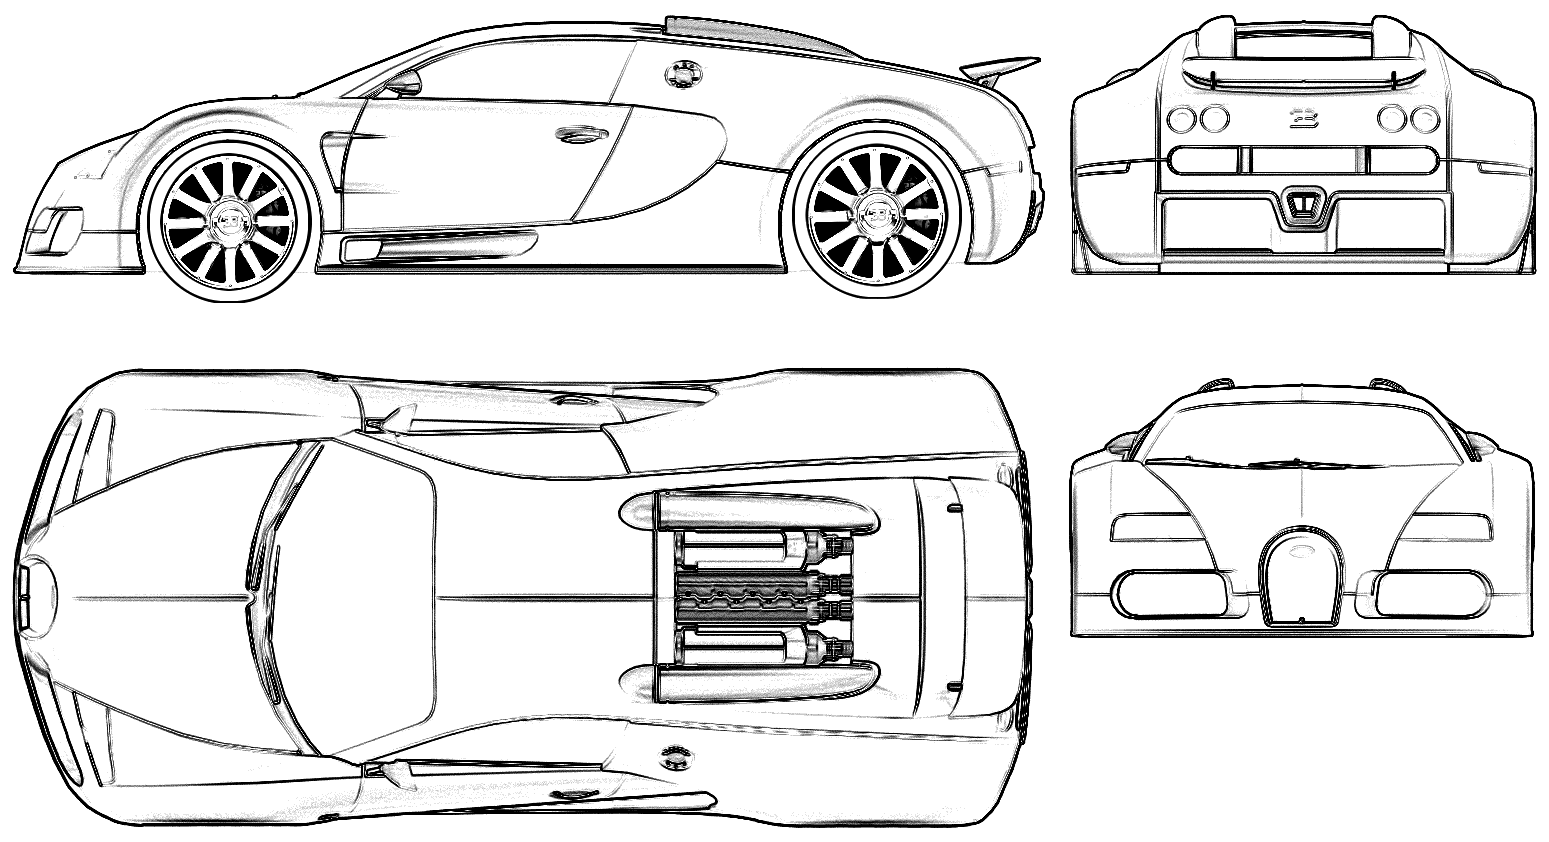 Auto Bugatti 16-4 Veyron